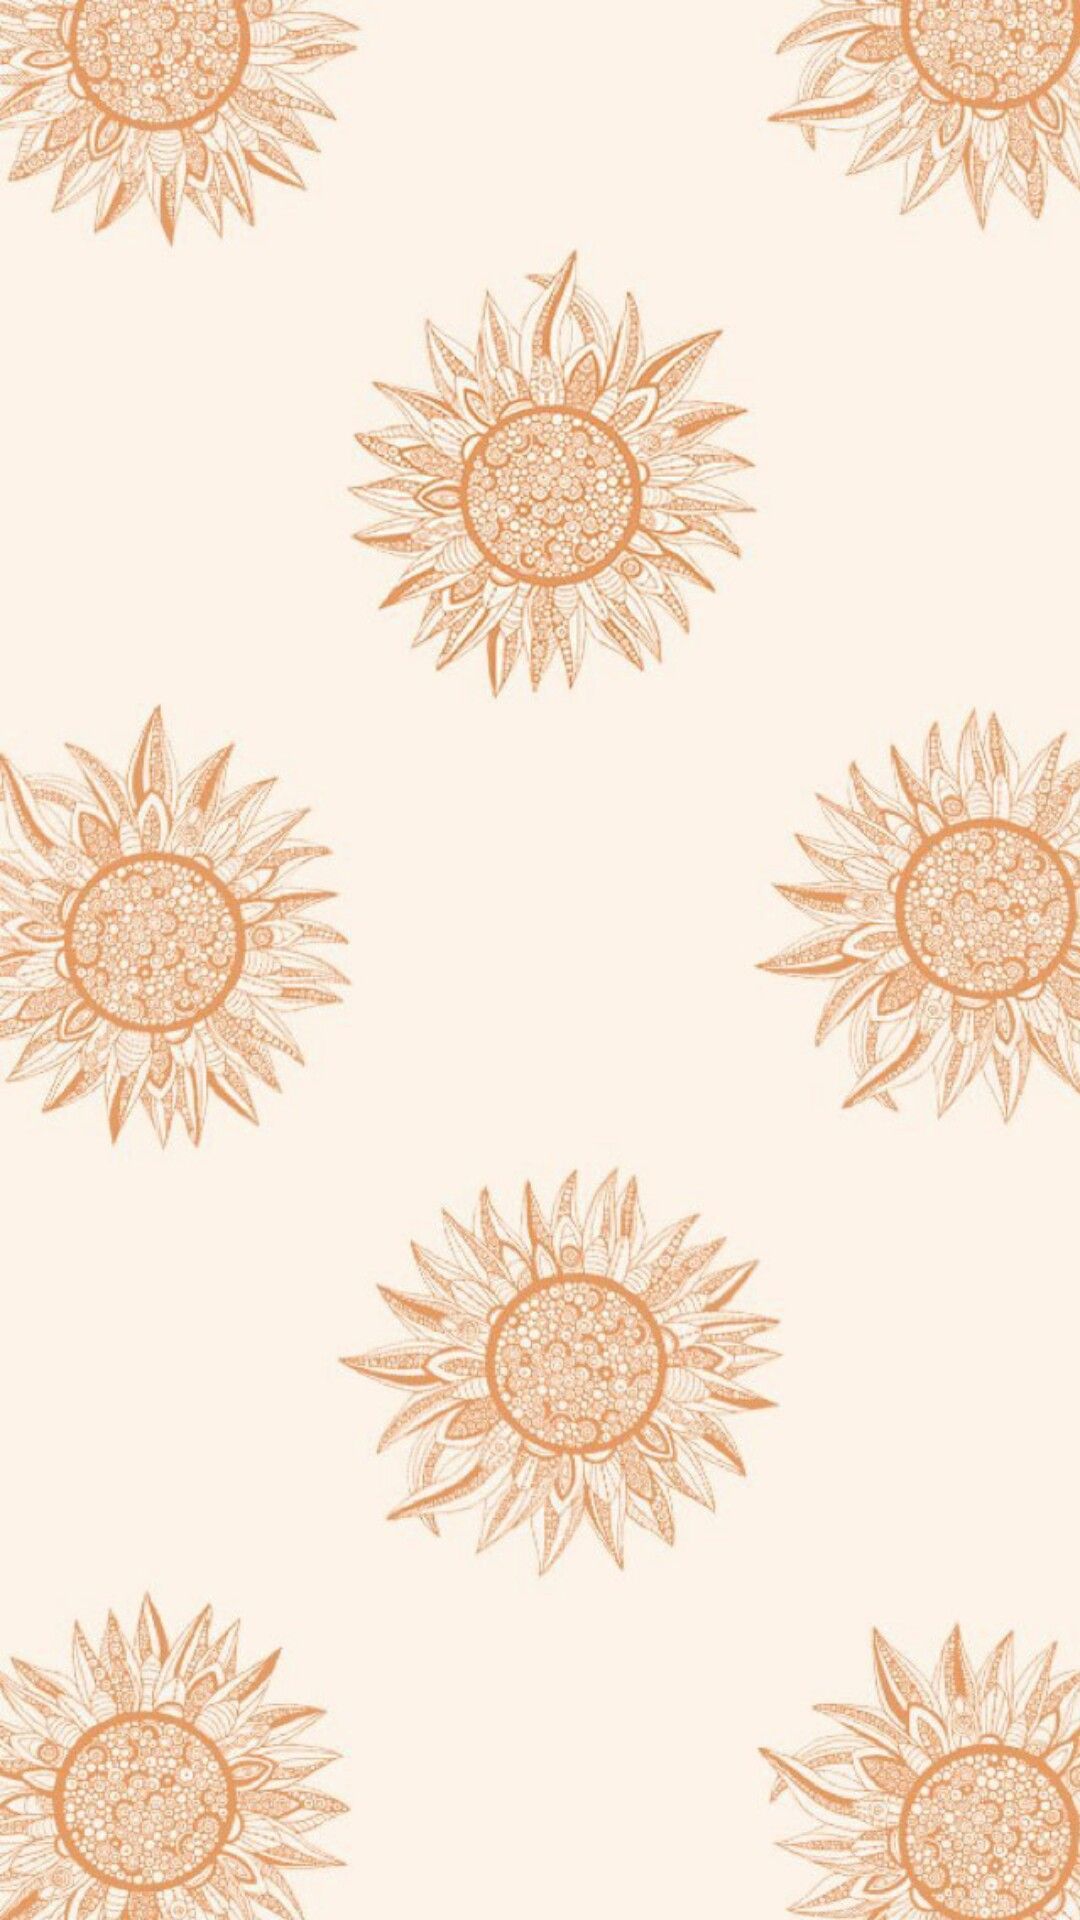 A pattern of sunflowers in orange - Boho, sun